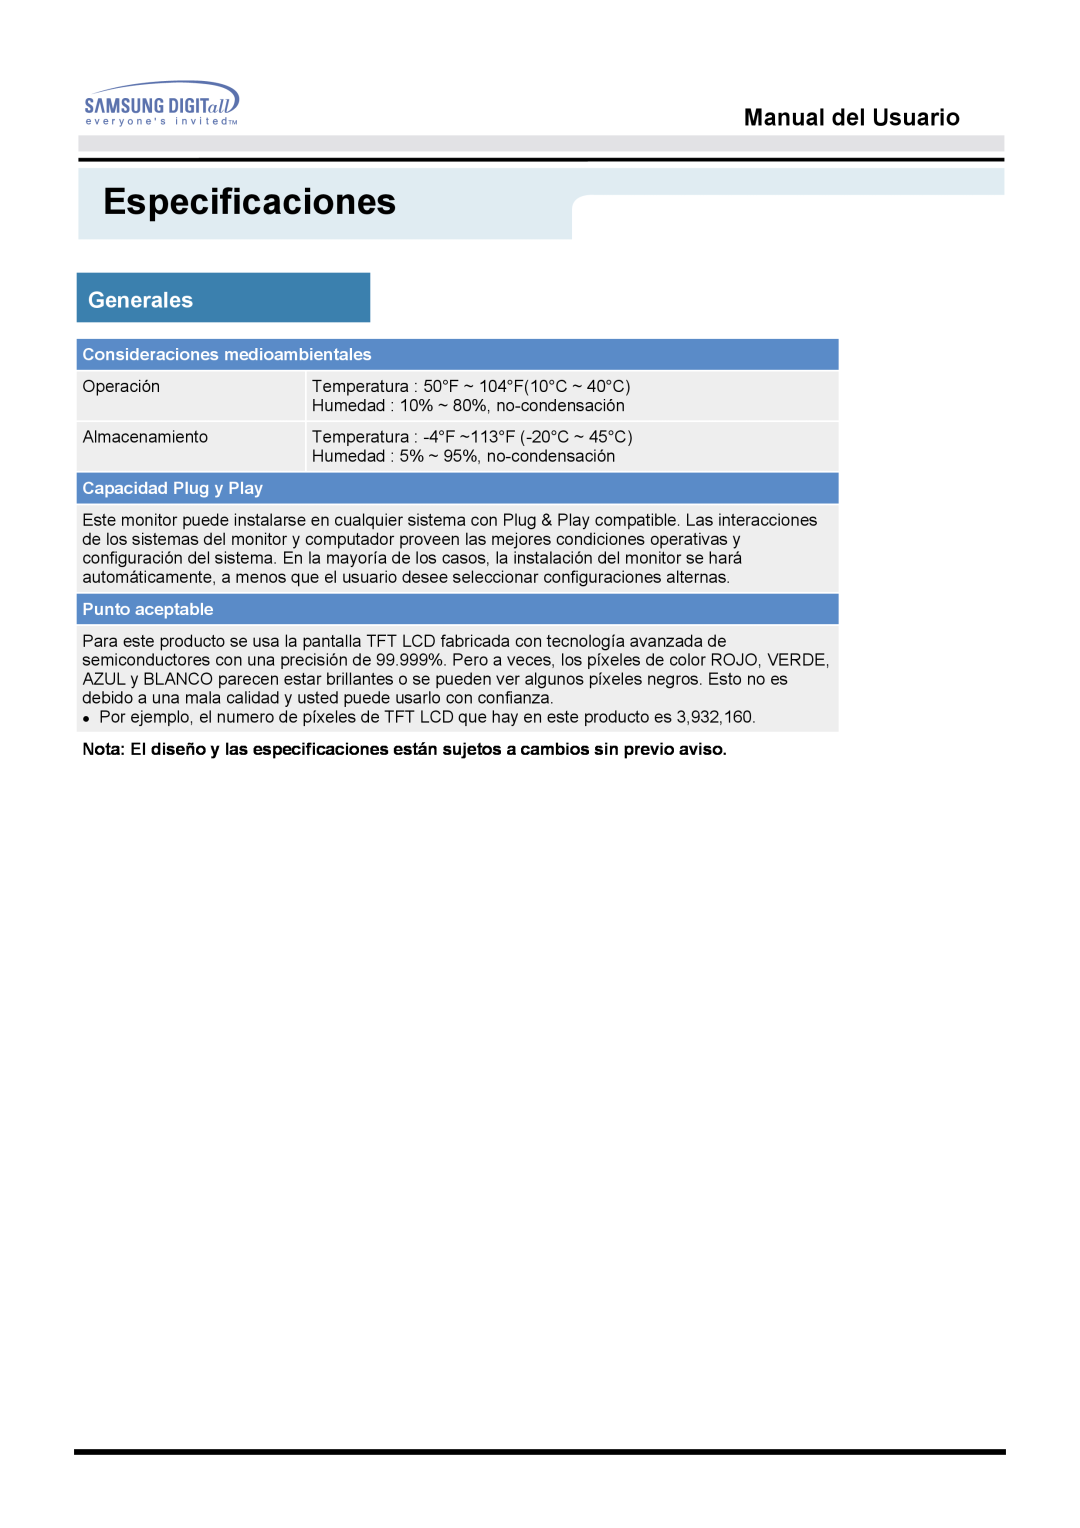 Samsung MO17ESZSZ/EDC Especificaciones, Manual del Usuario, Generales, Consideraciones medioambientales, Punto aceptable 